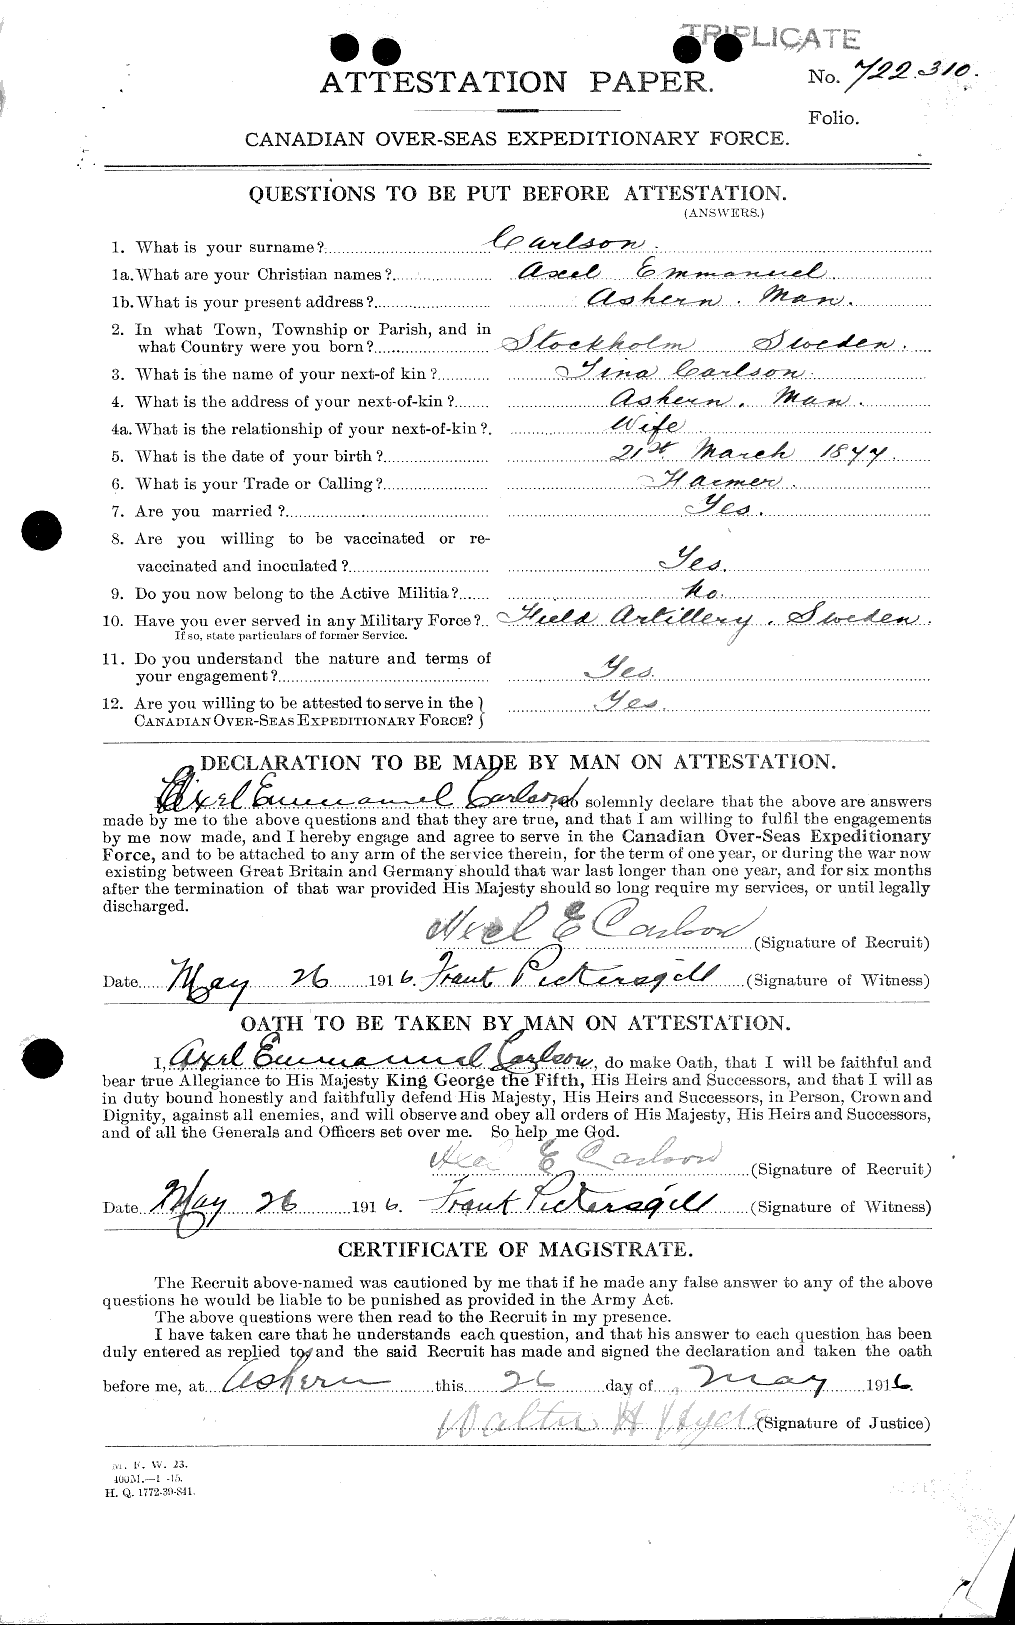 Dossiers du Personnel de la Première Guerre mondiale - CEC 004489a